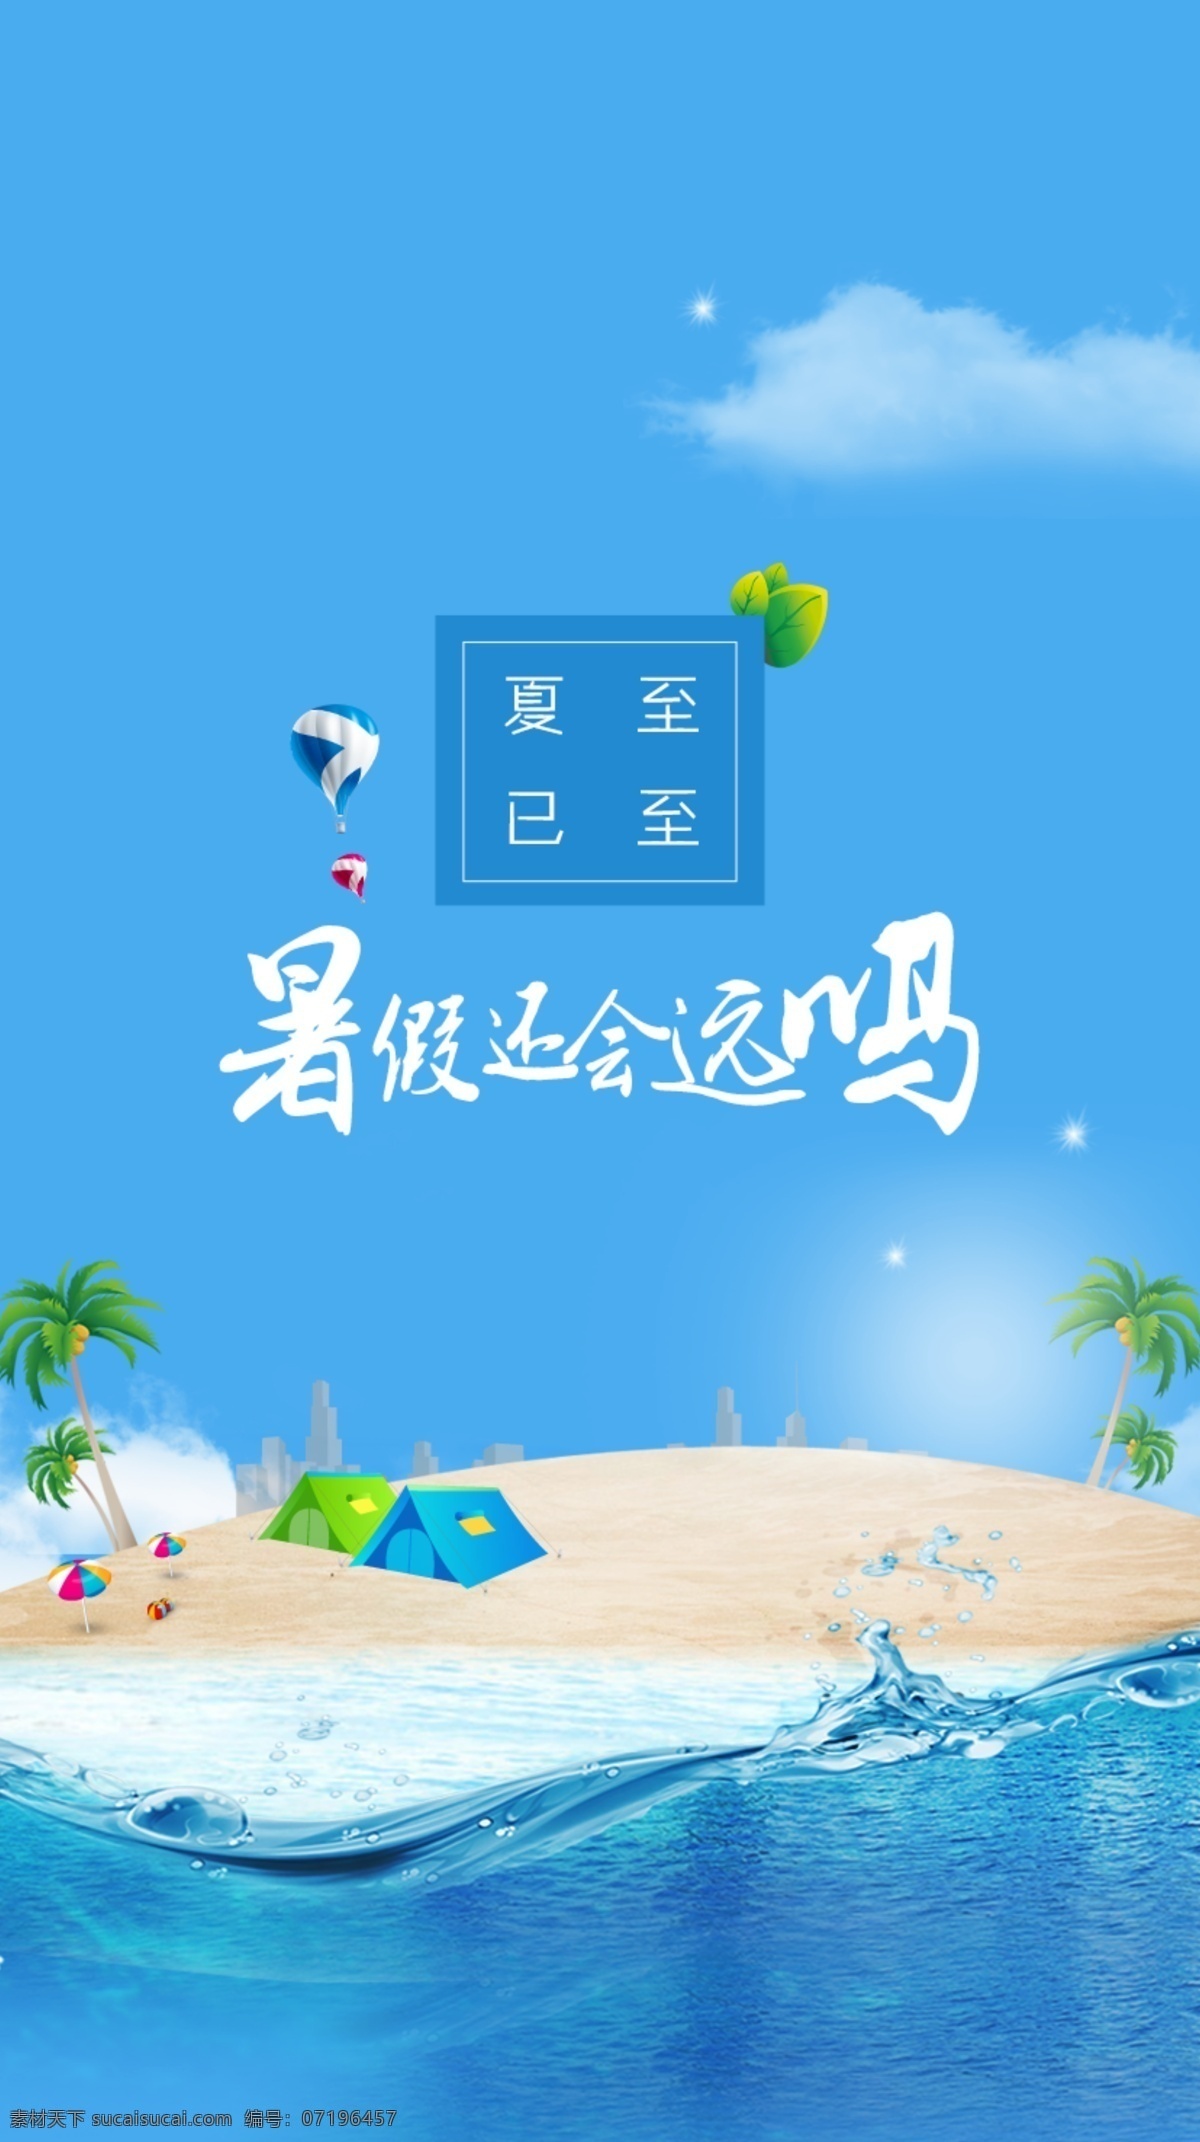 夏至已至 夏天 凉爽 海滩 h5 夏季活动 封面 首页 蓝色